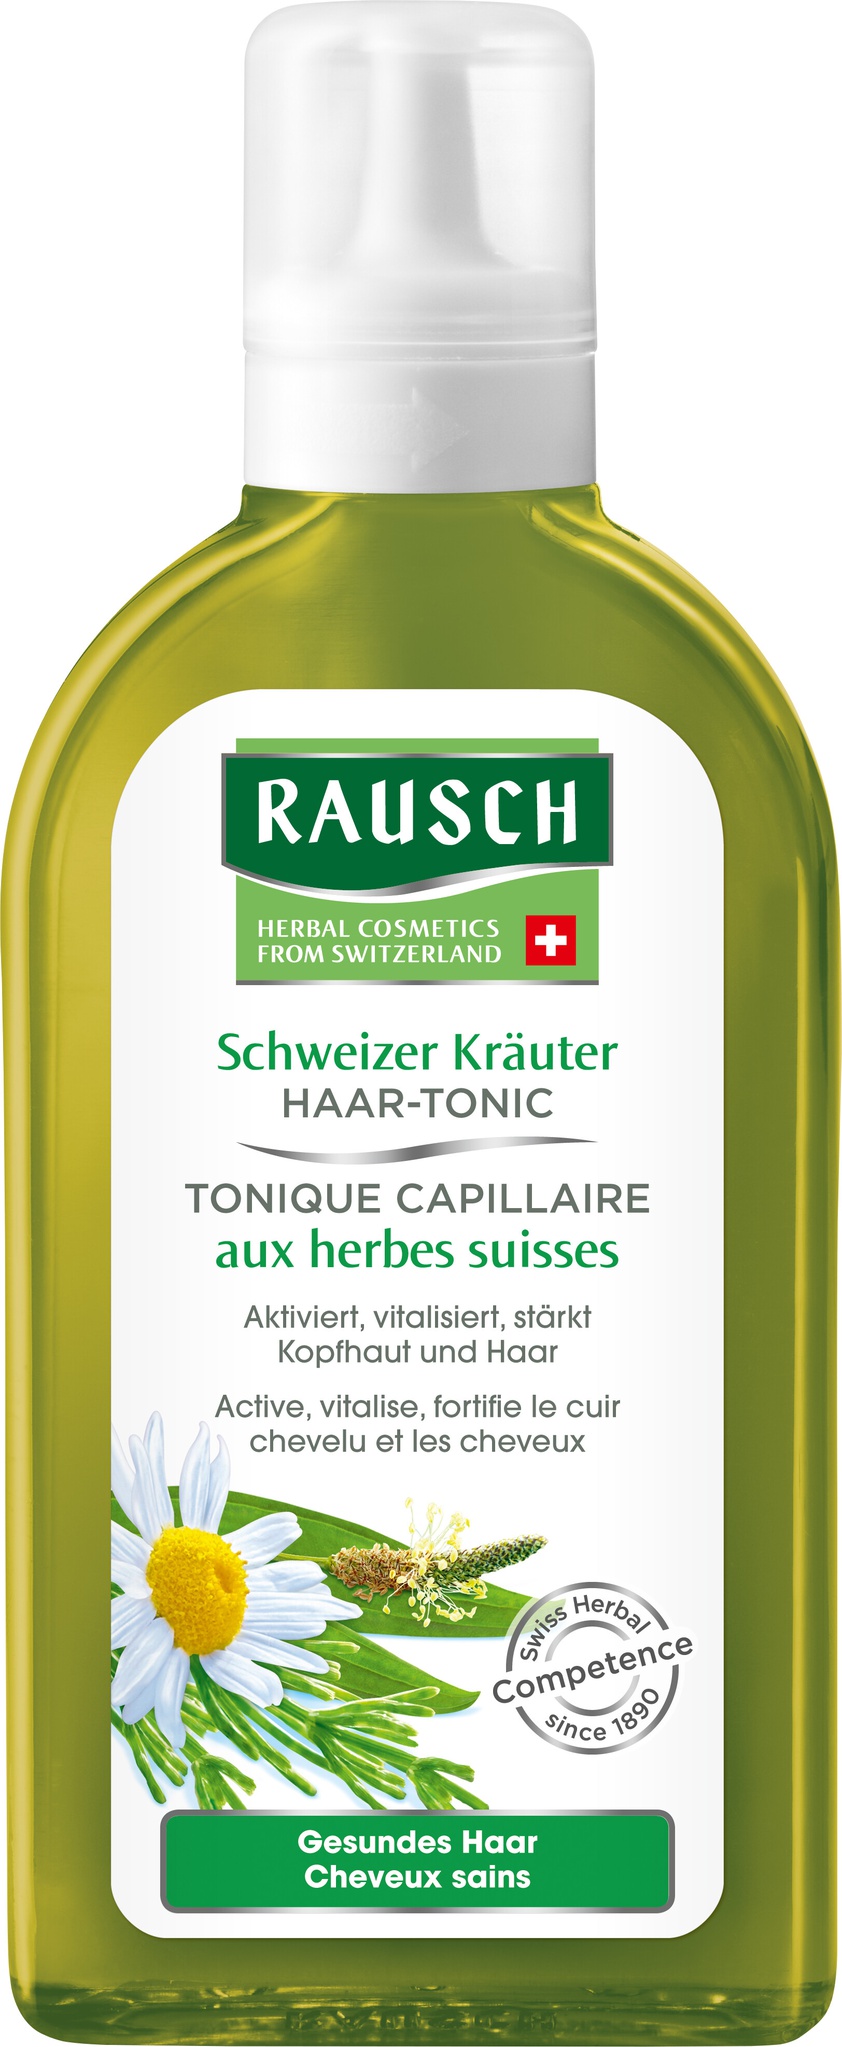 Rausch Schweizer Kräuter Haar-Tonic